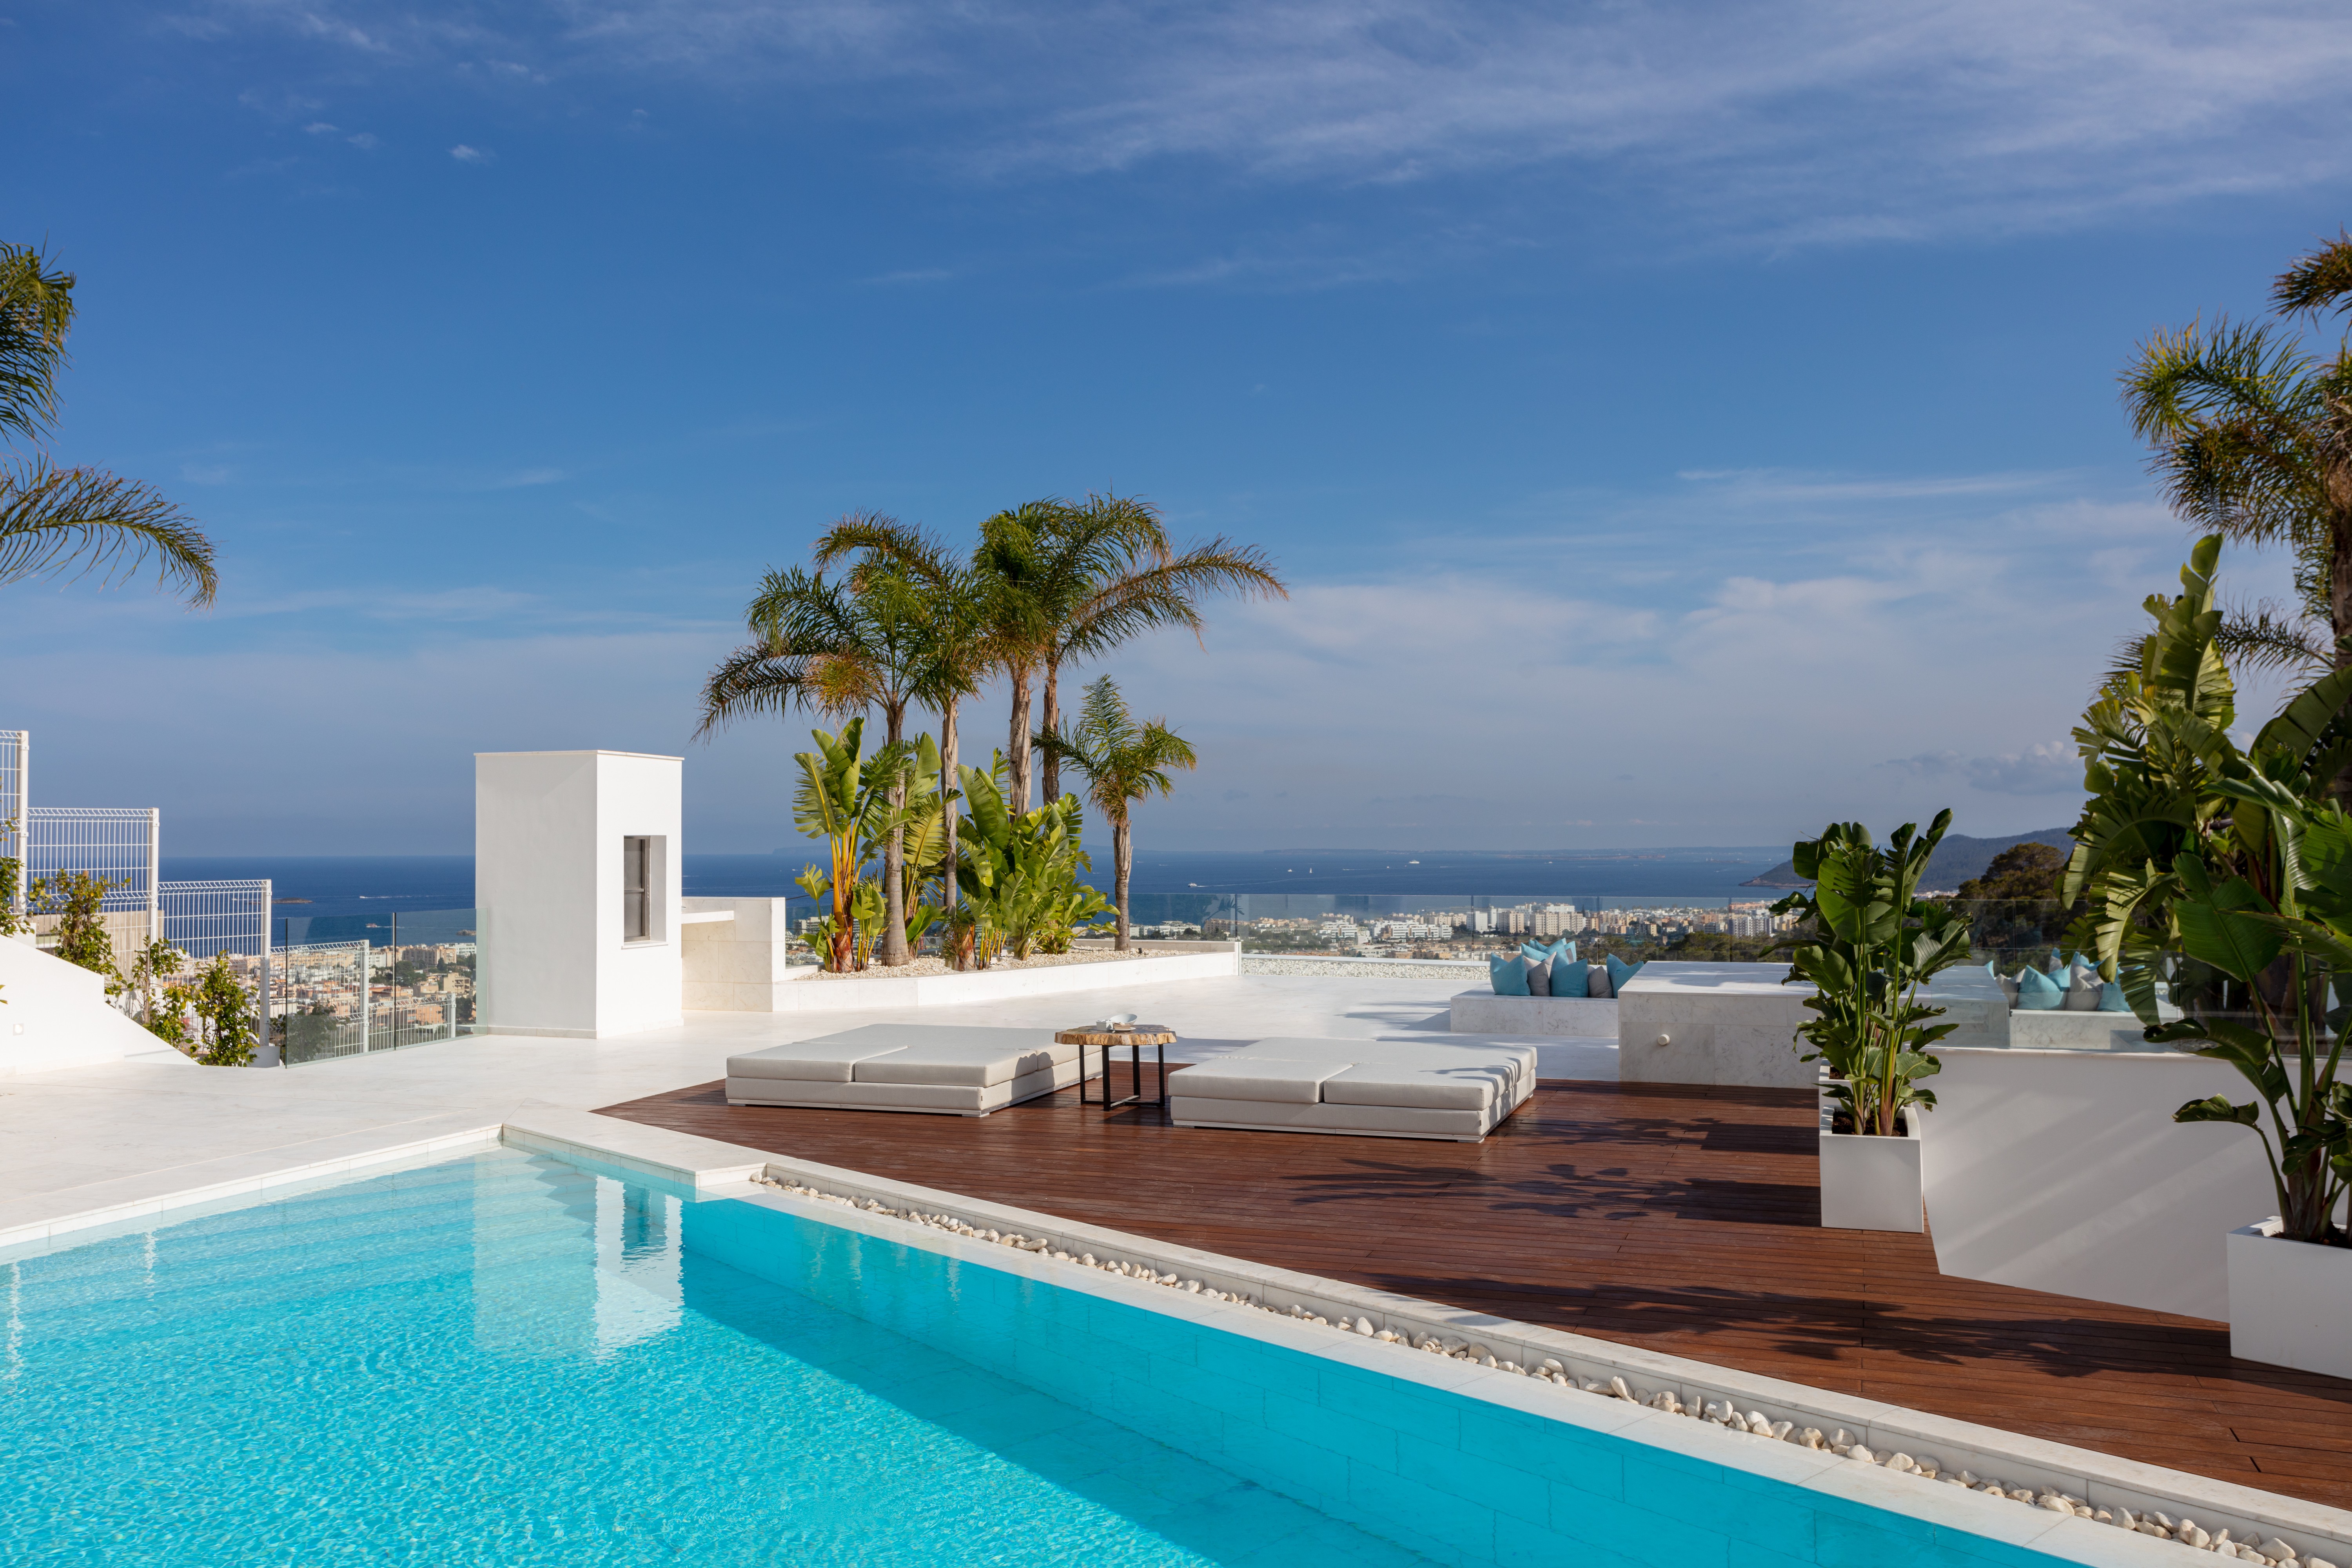 Villa moderna y lujosa de reciente construcción cerca de Ibiza ciudad